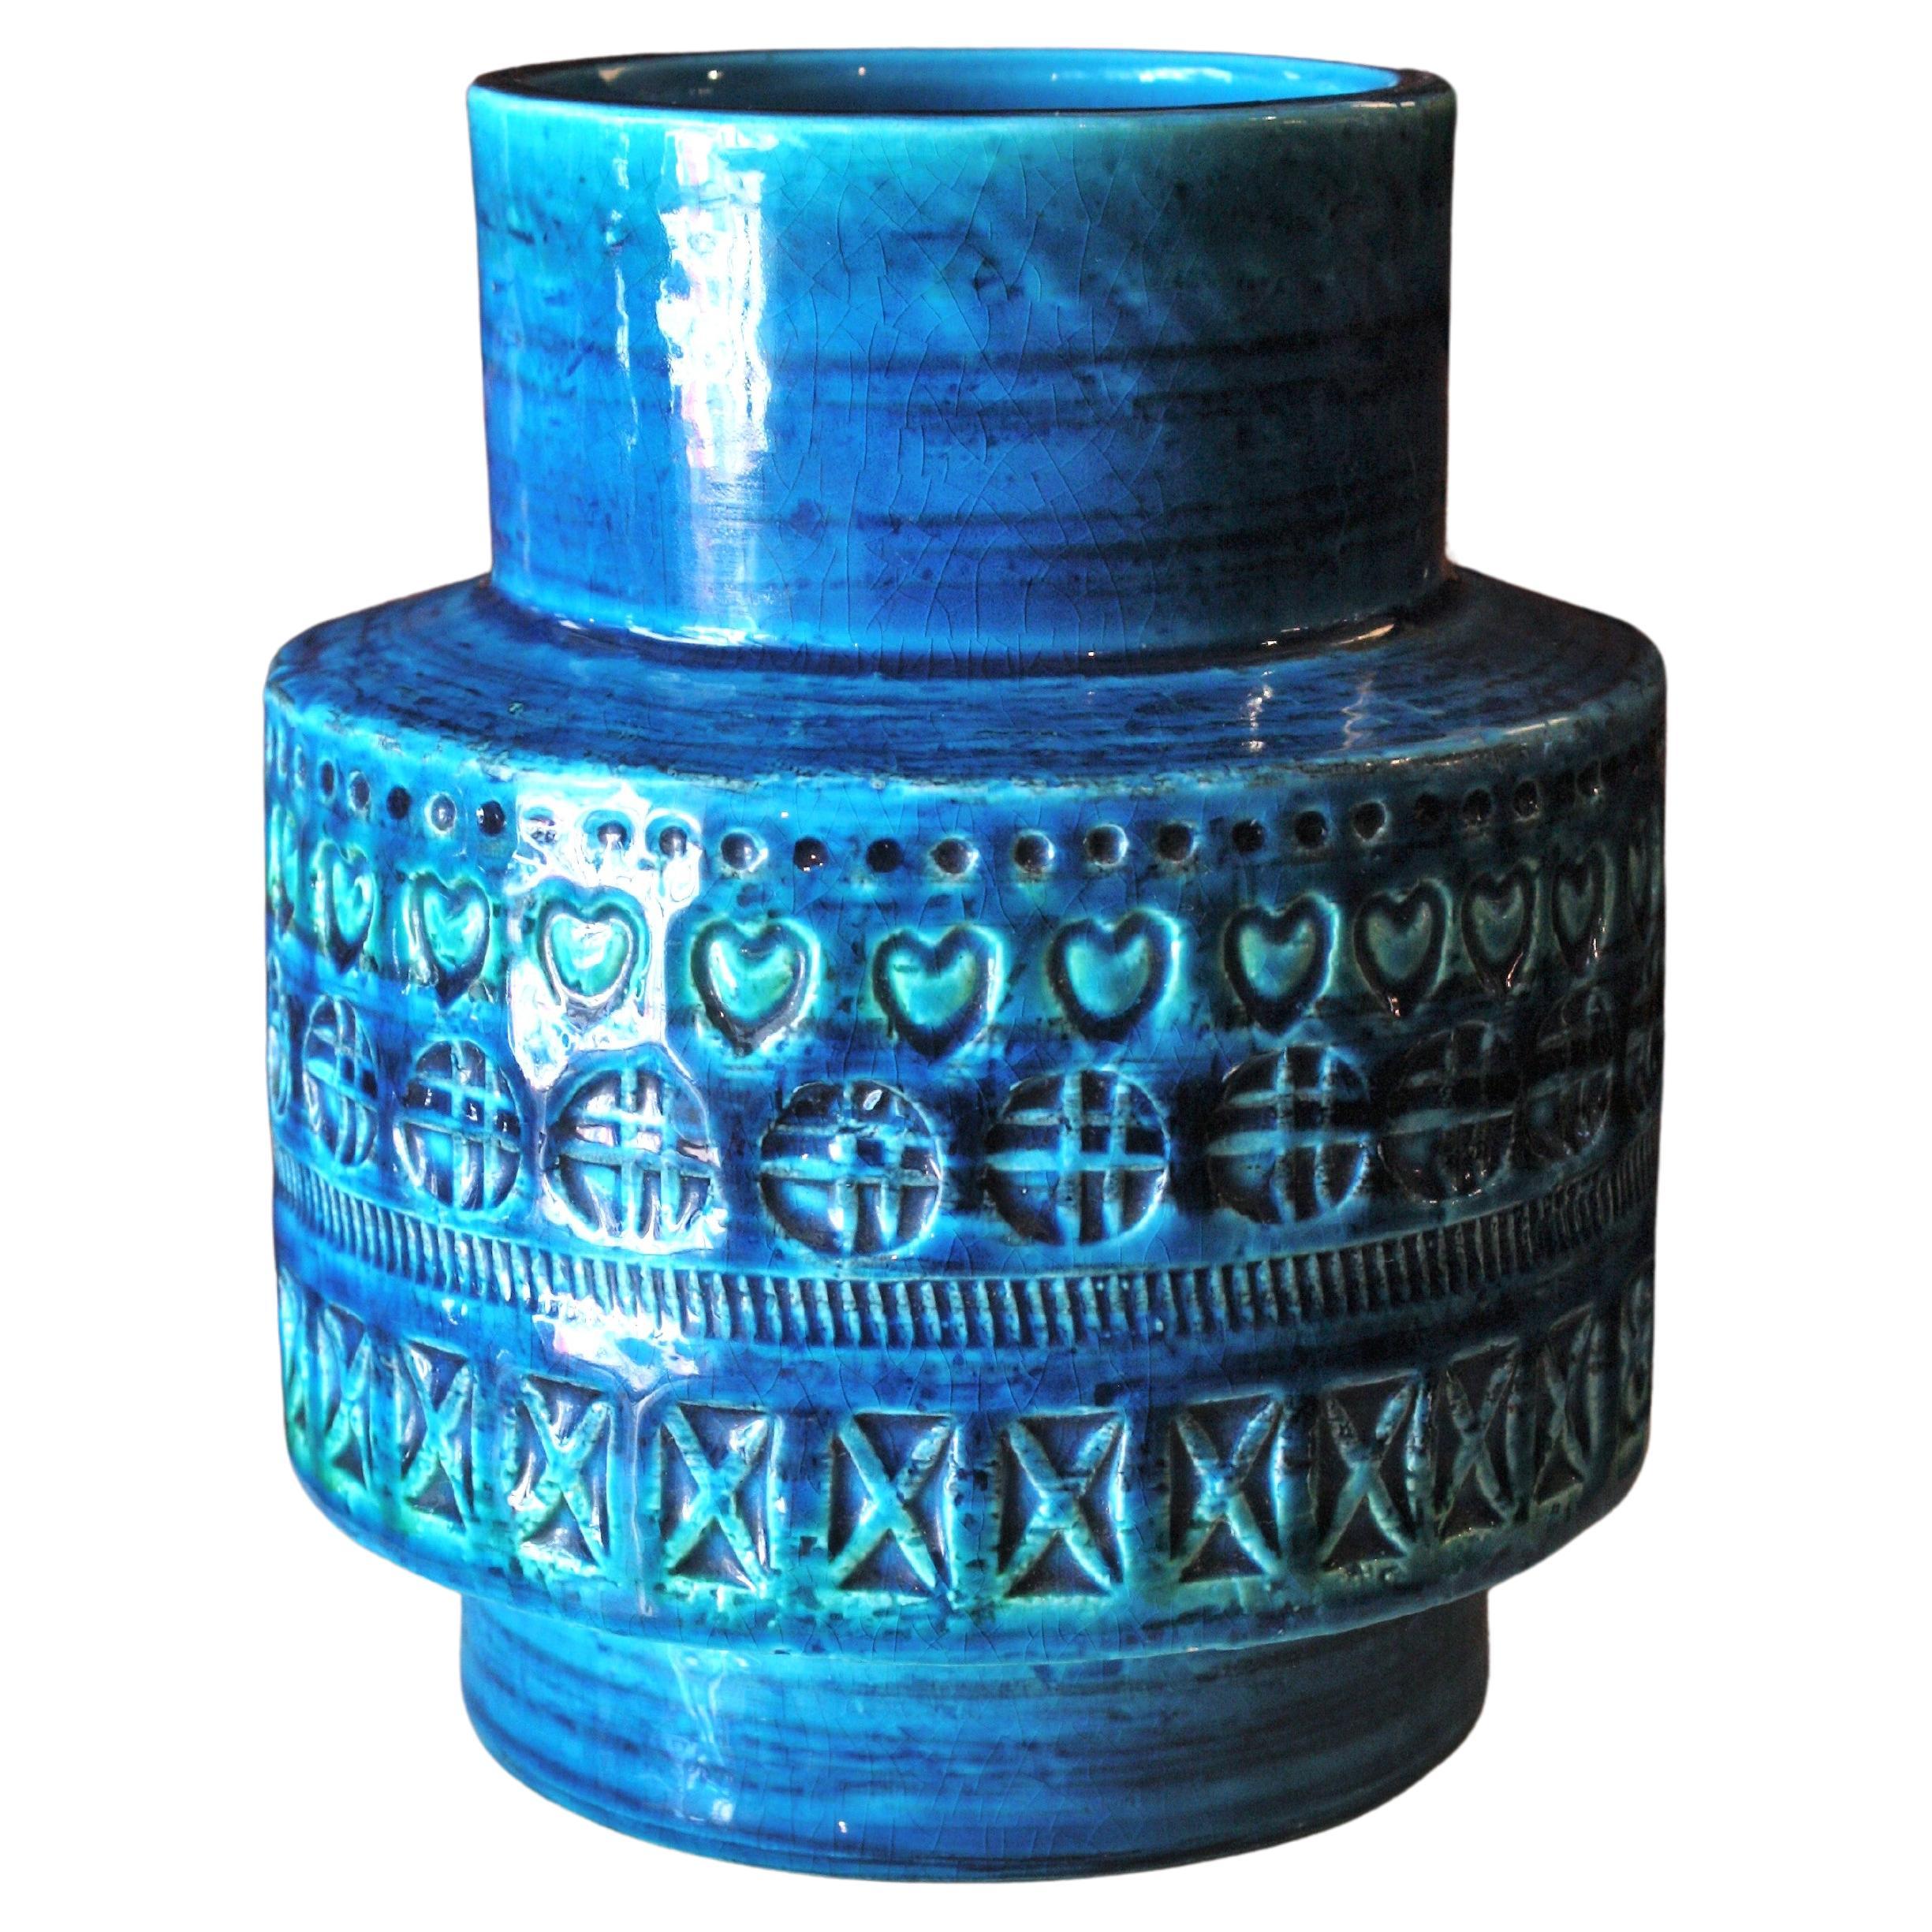 Bitossi Aldo Londi Rimini Blue Ceramic Vase, 1960s For Sale